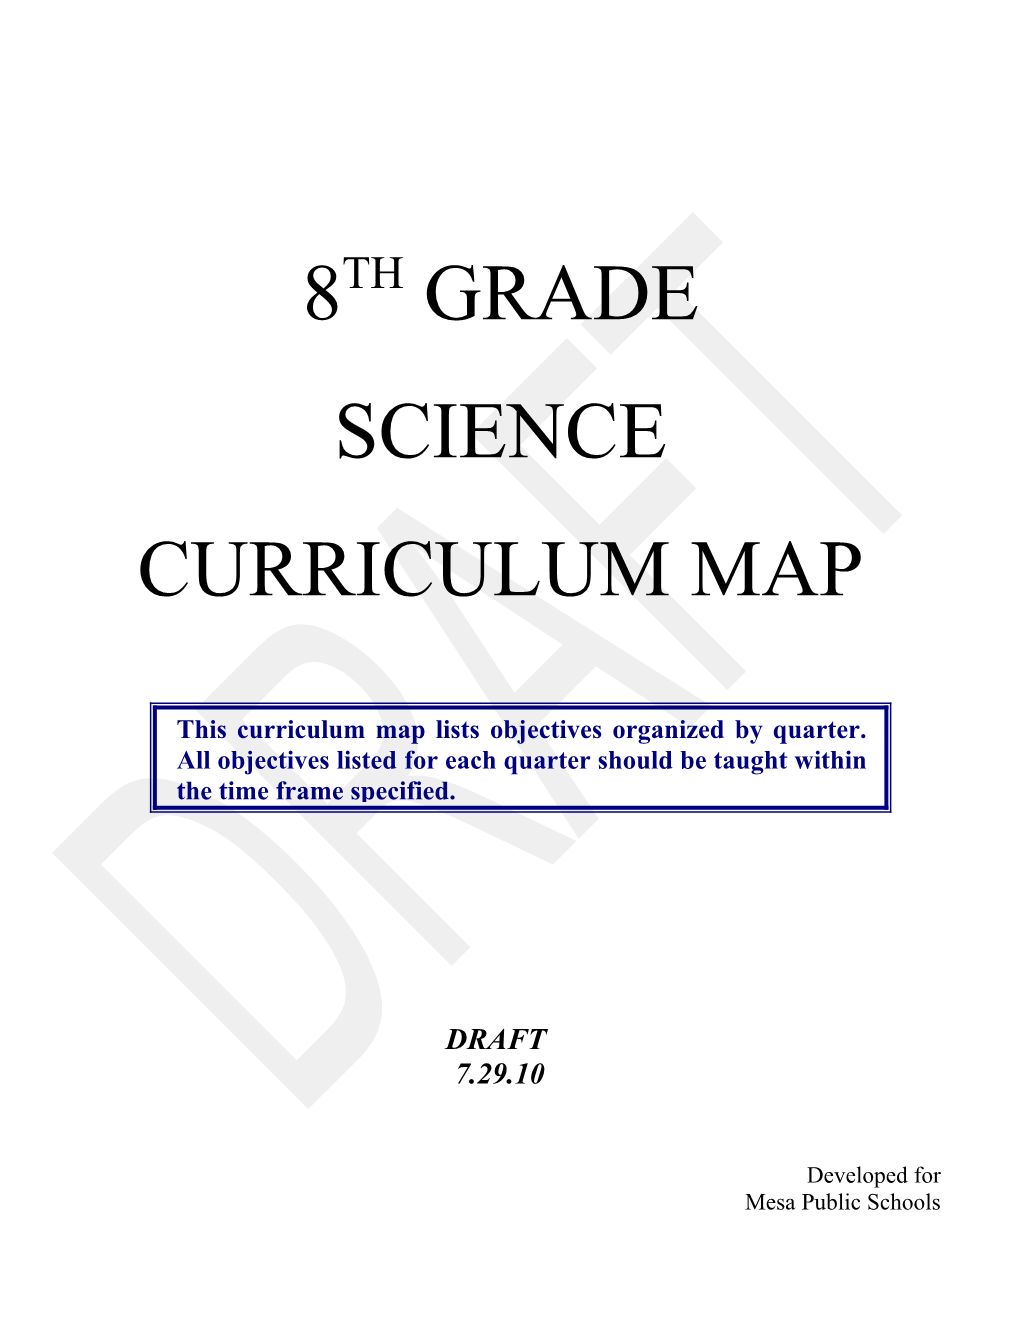 Curriculum Map for SC08 (Mesa Public Schools) Revised 7/29/10